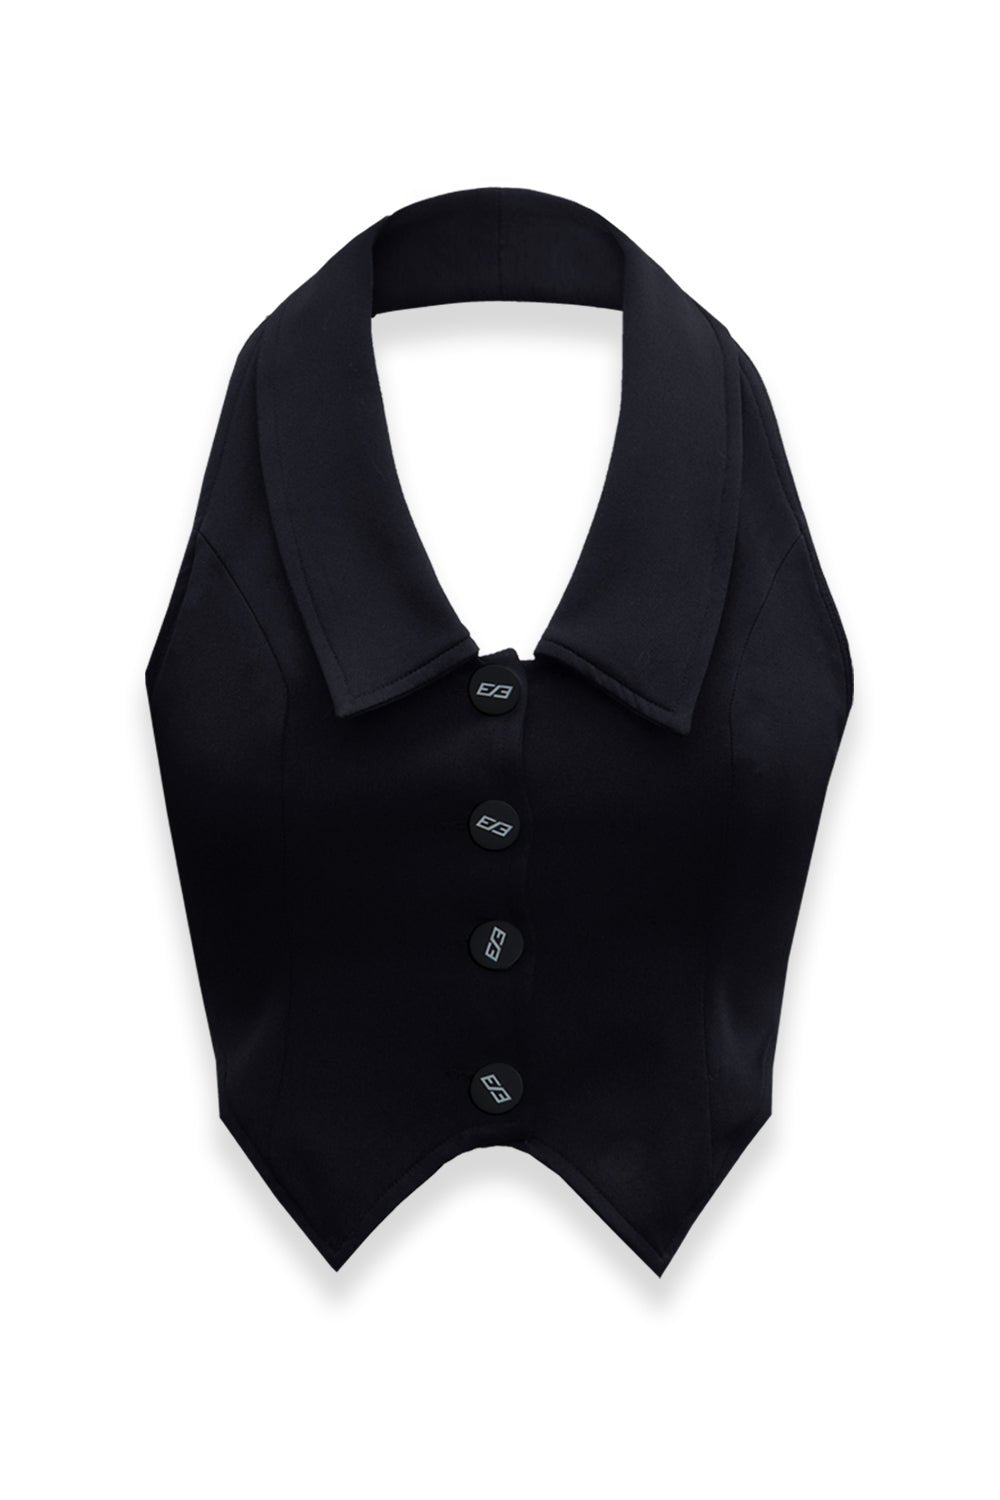 Black Workload Tie-up vest - BEEGLEE